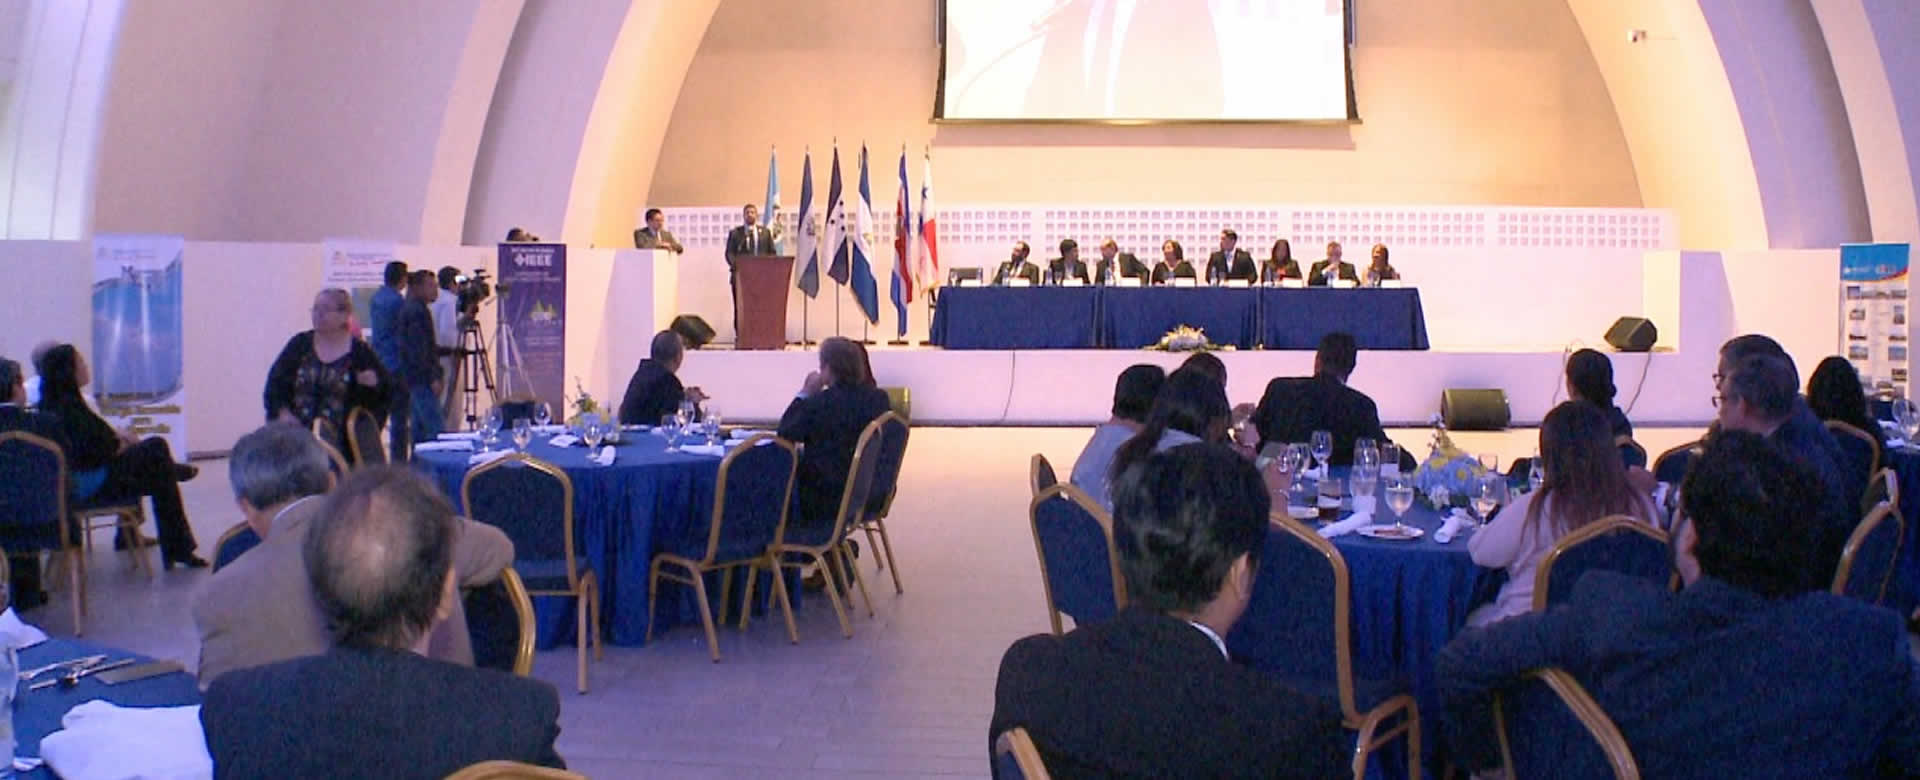 Managua es la sede de CONCAPAN 2017, un evento internacional de ciencia y tecnología